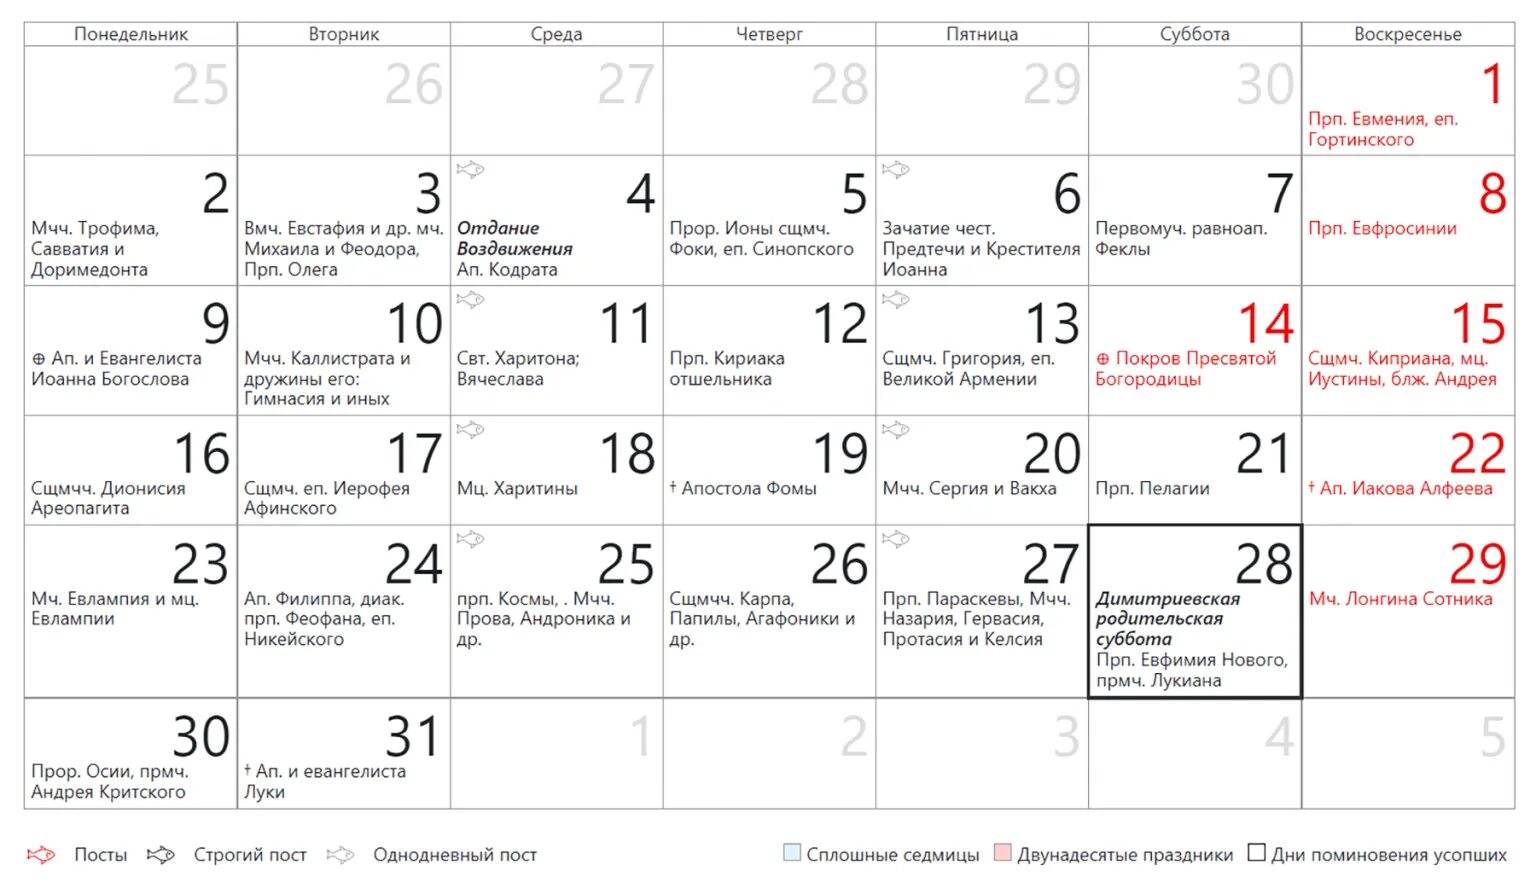 Праздник октября 2023 года. Праздники в октябре 2023. Церковные праздники в октябре 2023. Церковный календарь на 2023 год православные праздники и посты. Православный календарь на 2023 год с праздниками.